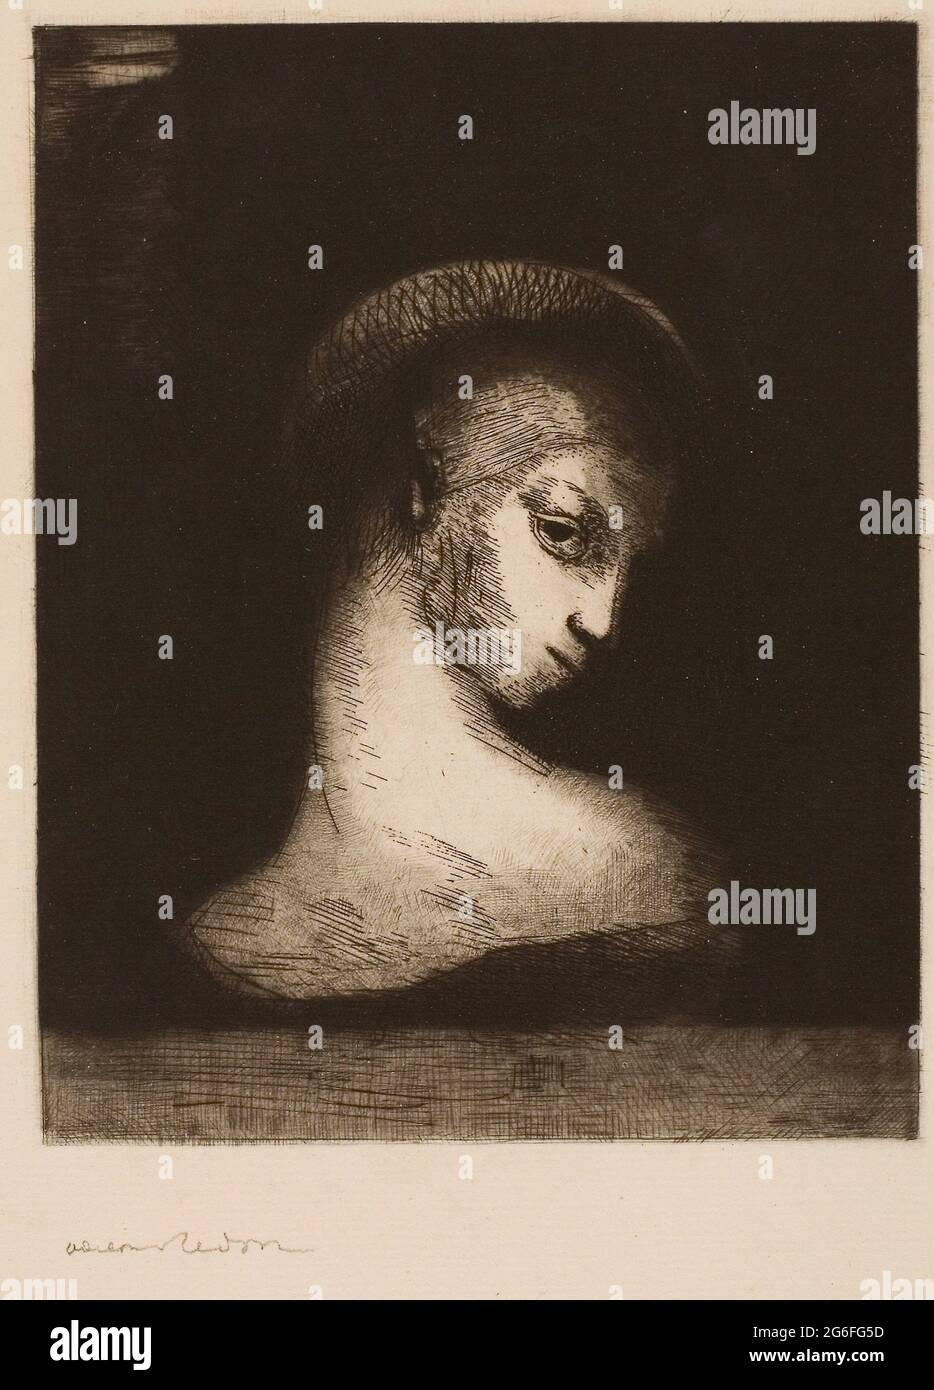 Odilon Redon. Perversidad - 1891 - Odilon Redon Francés, 1840-1916. Grabado y punto seco sobre papel de color crema. Francia. Foto de stock